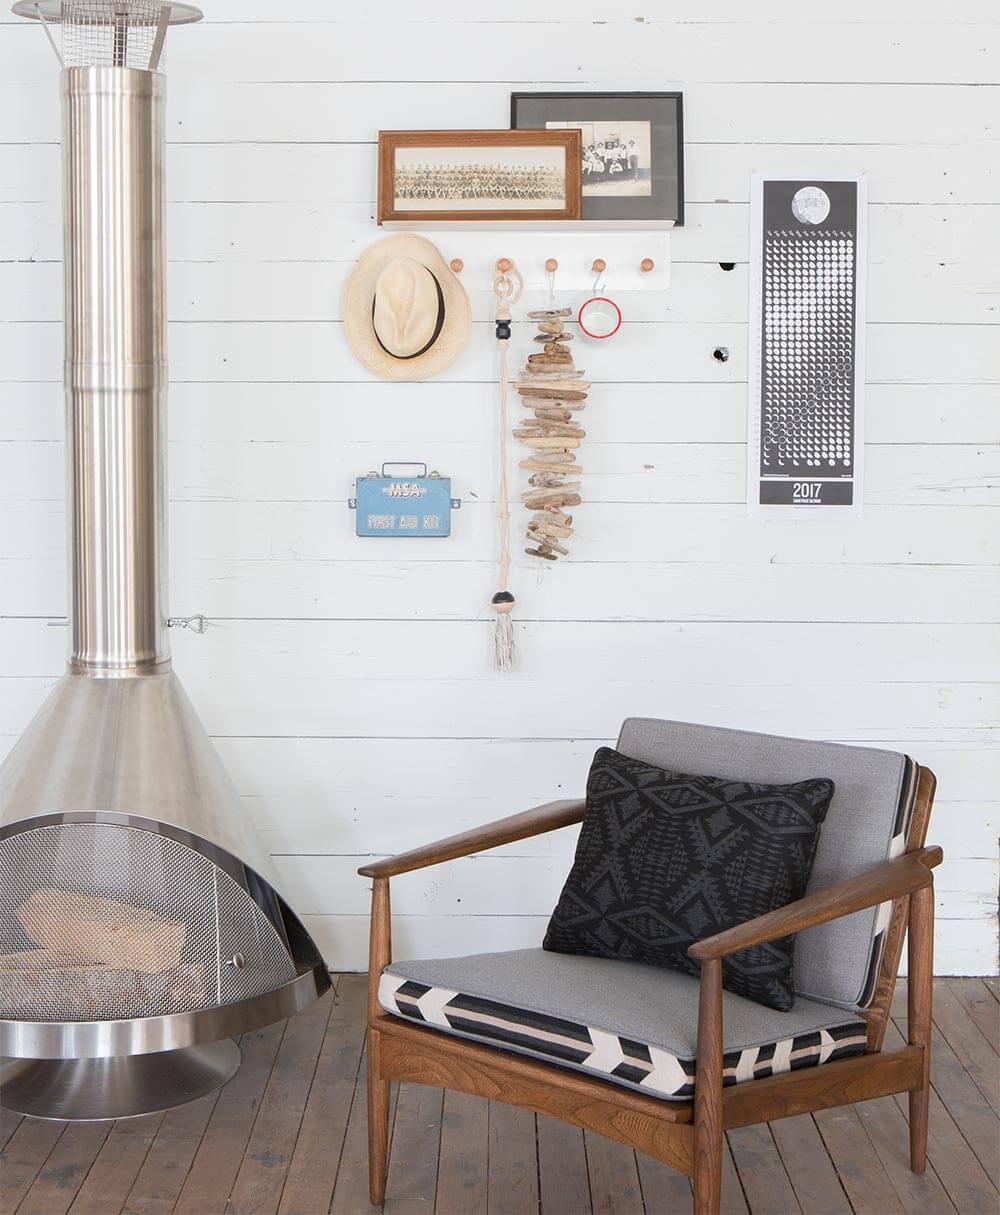 Coussins de tons gris en tissus Pendleton par Sunbrella sur une chaise en bois à côté d’une cheminée moderne.